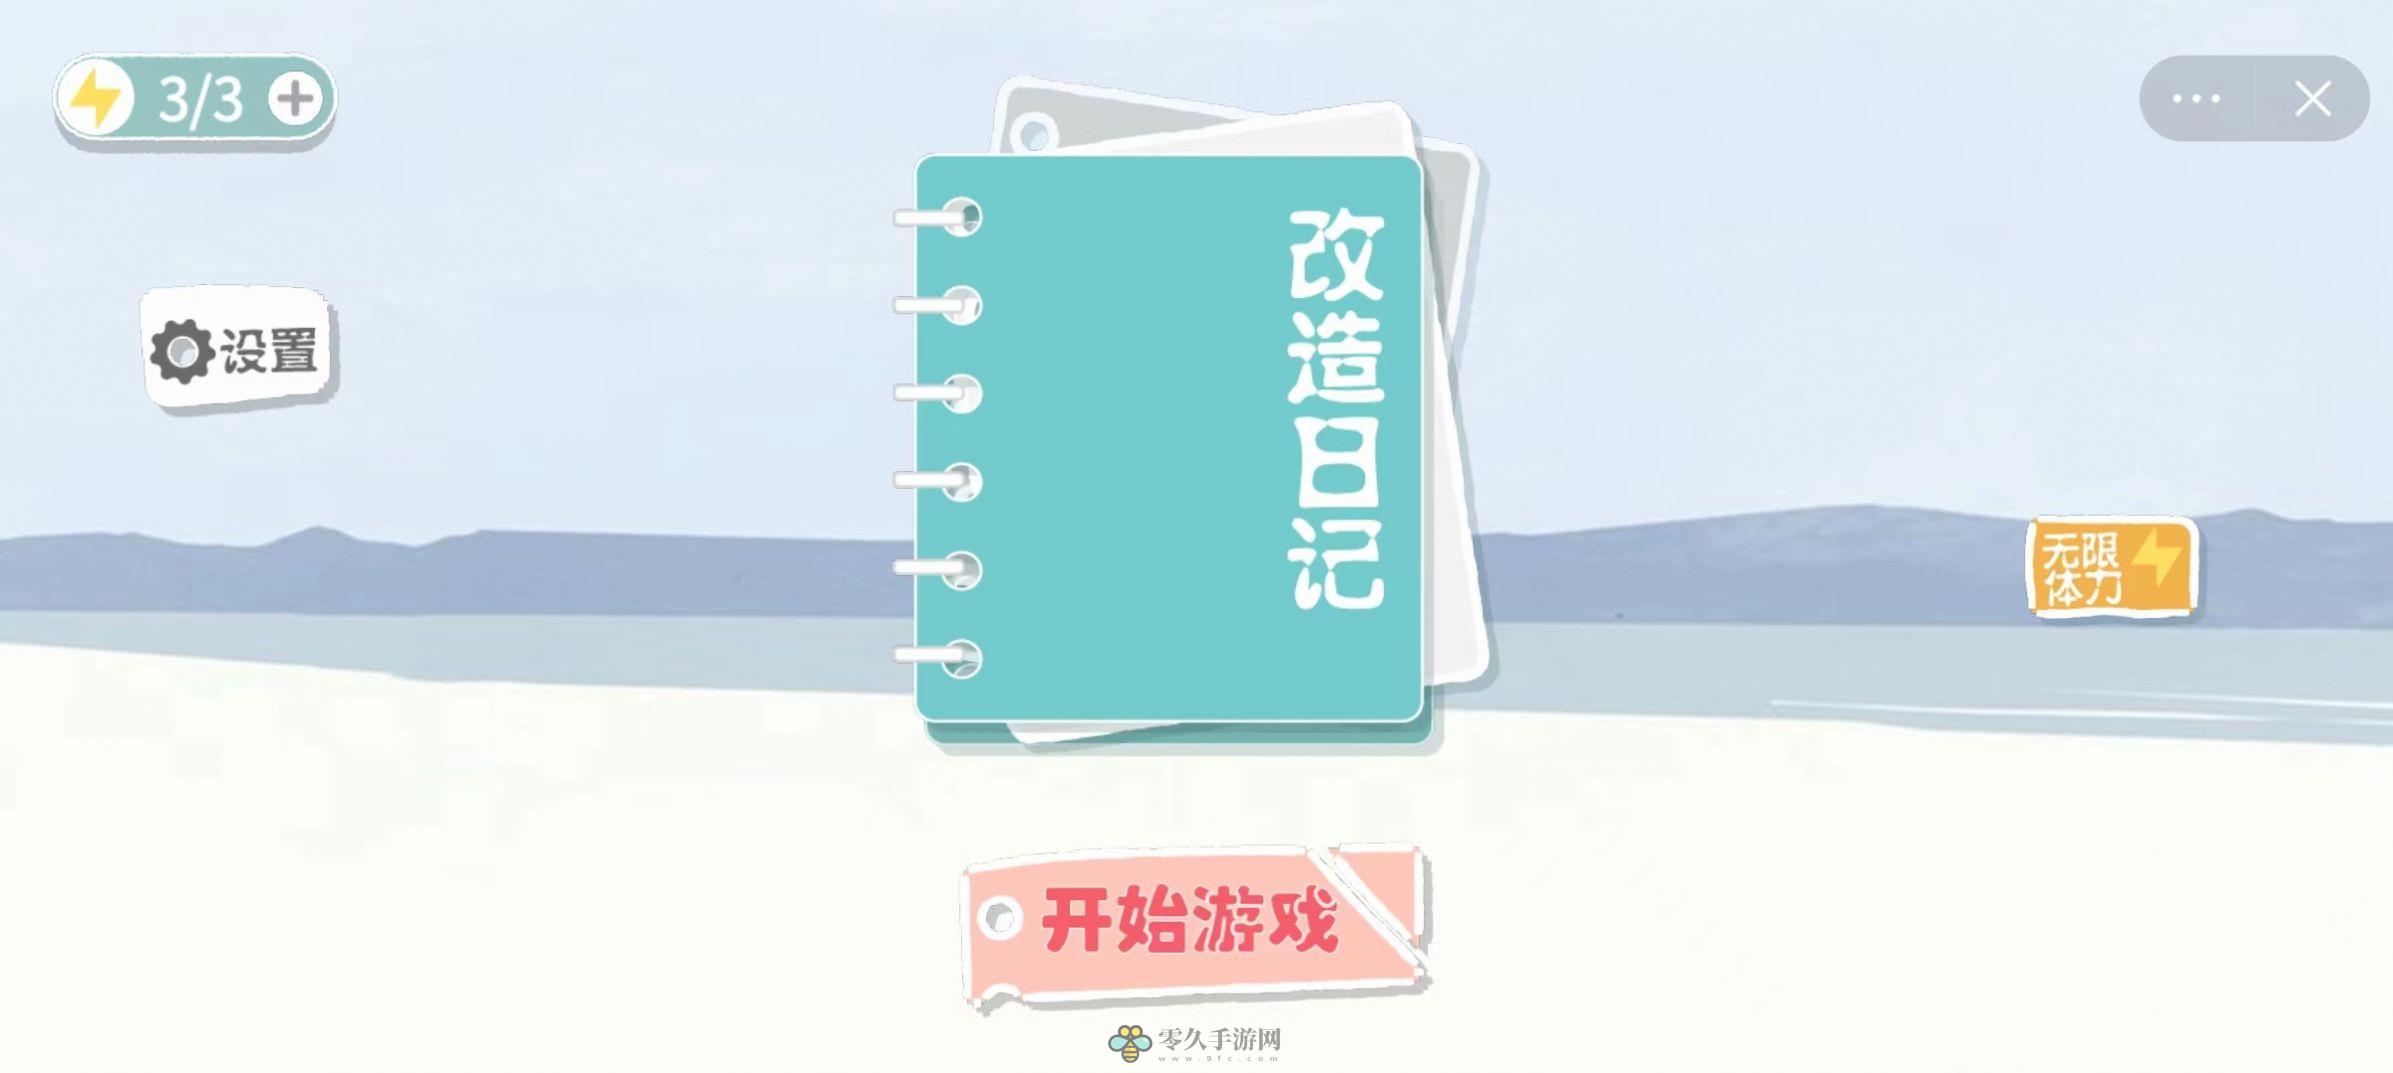 改造日记下载中文版